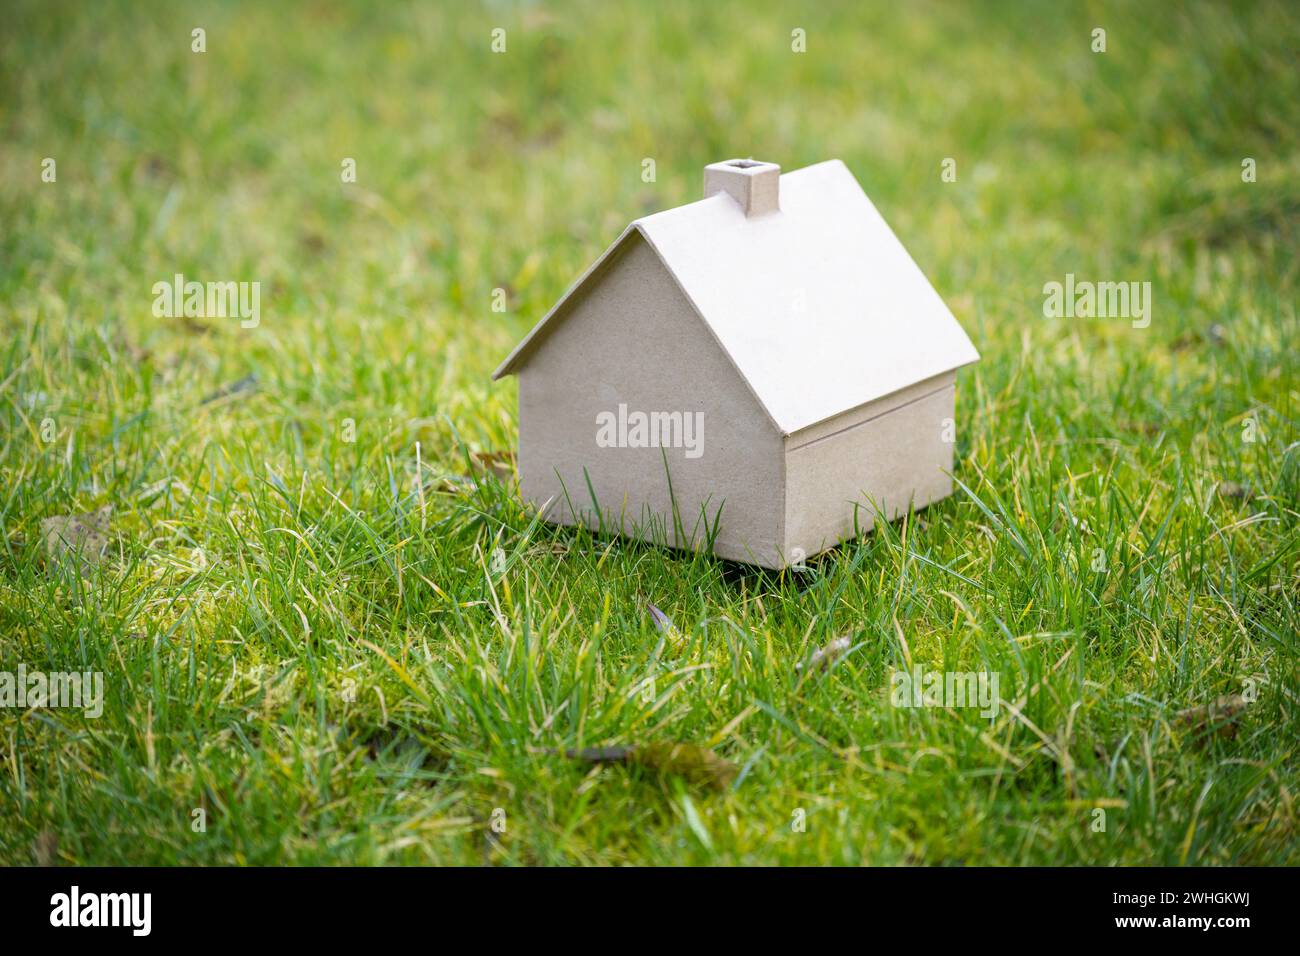 Kleines Haus aus Pappe auf grüner Wiese, Wohnkonzept, Immobilien und Architektur, Kopierraum, ausgewählter Fokus, Stockfoto